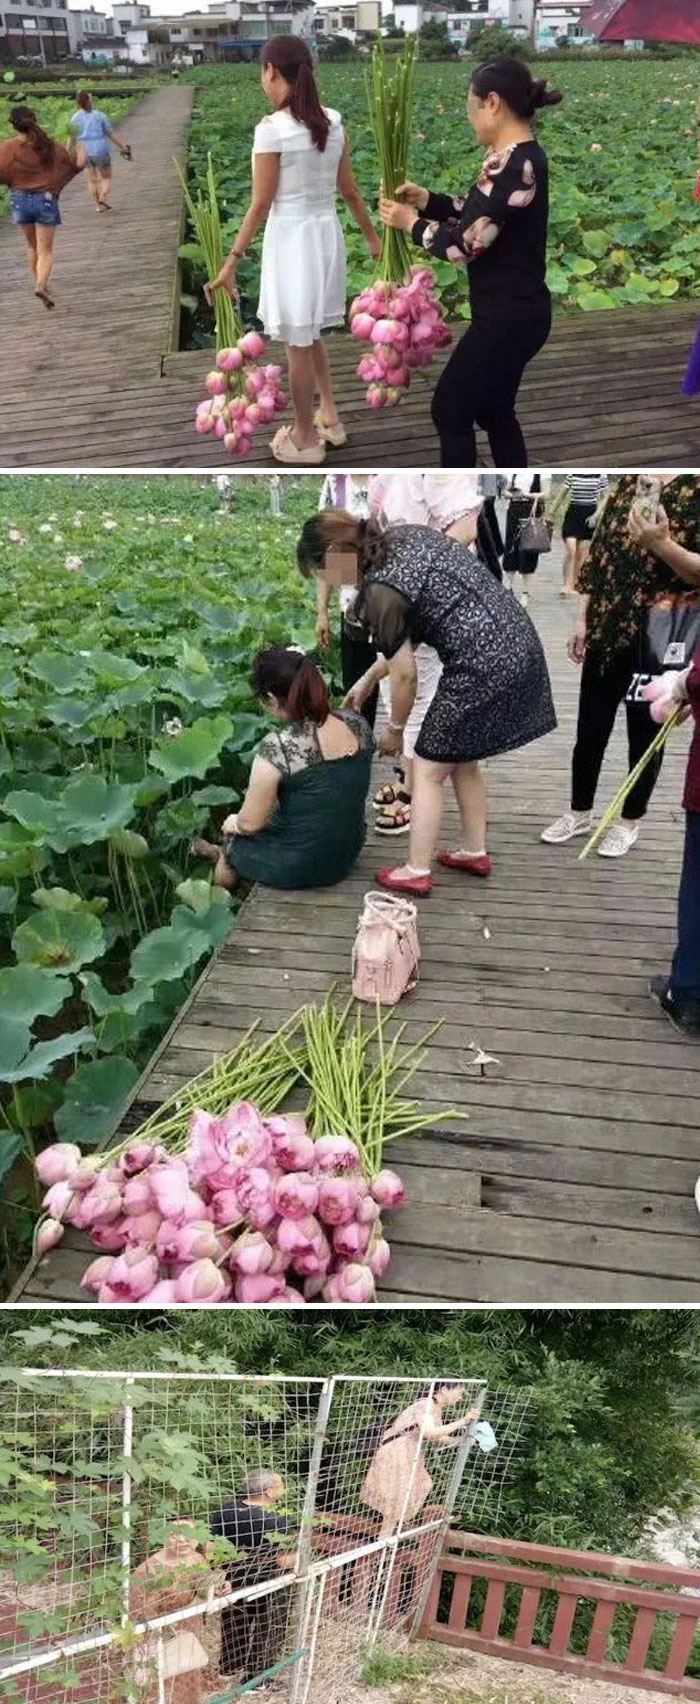 Estos turistas arrancaron todas las flores de loto de un ecoparque